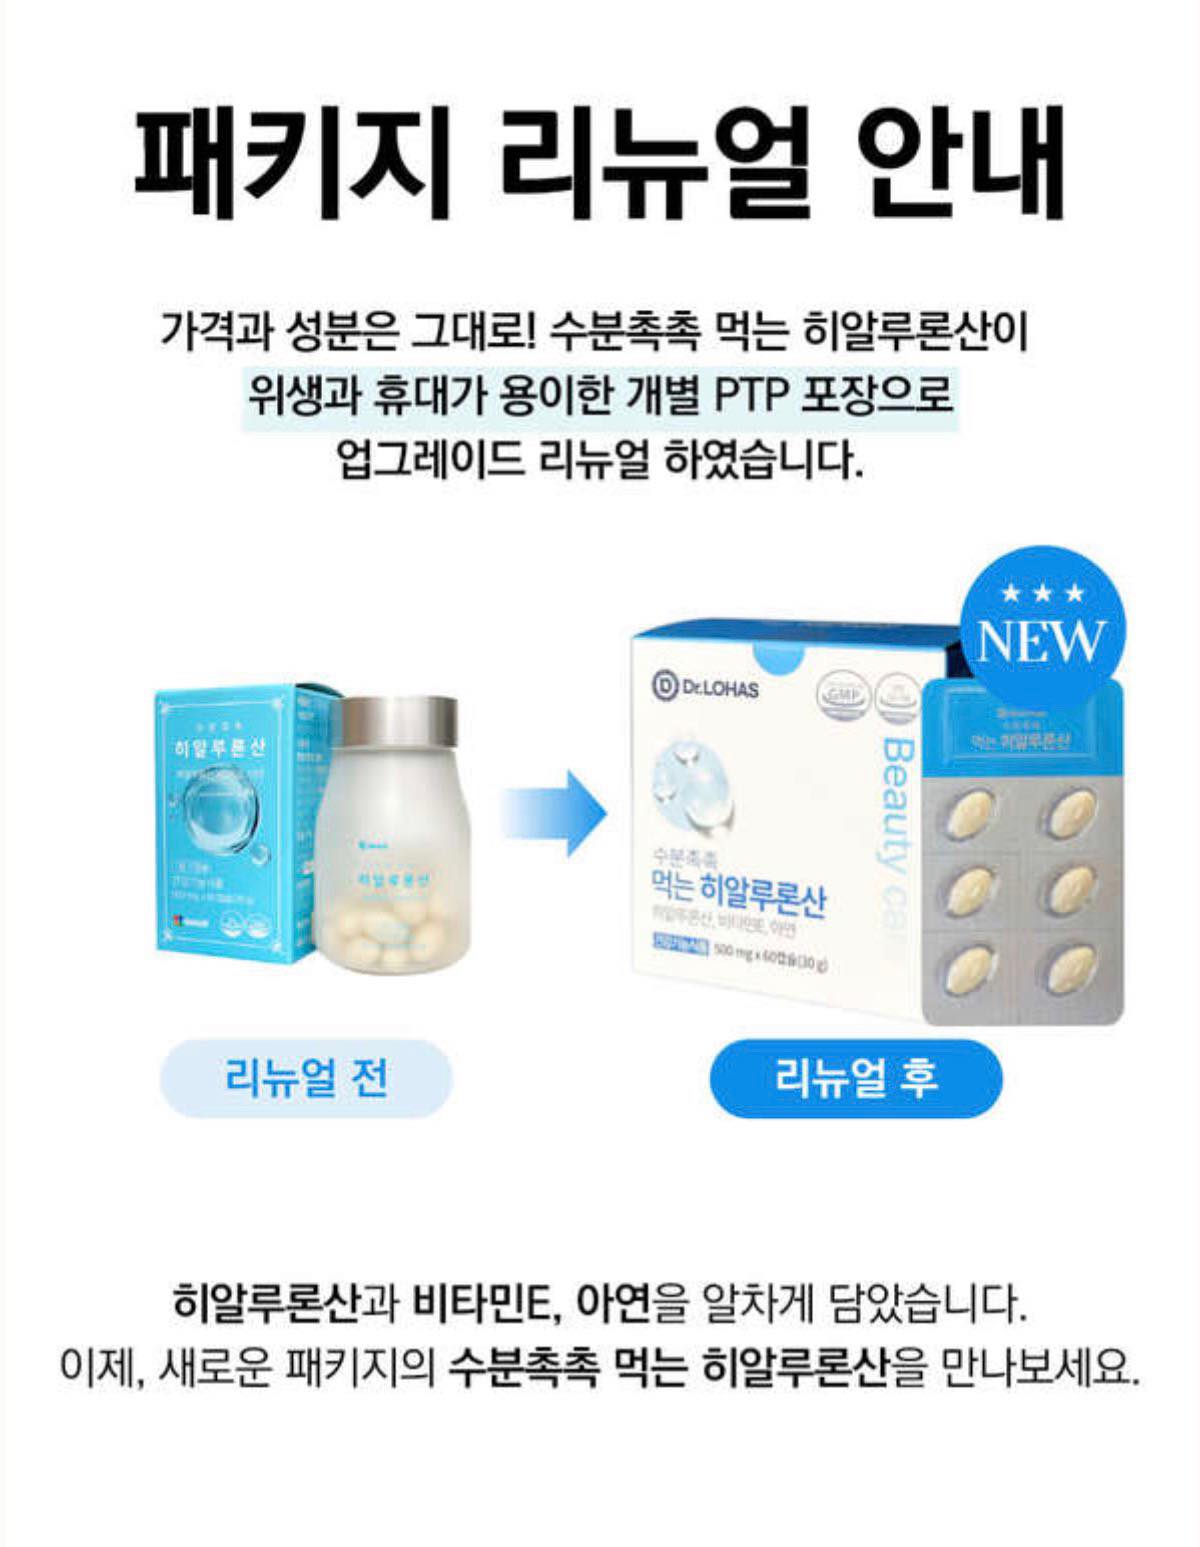 Viên uống cấp nước HY Hàn Quốc